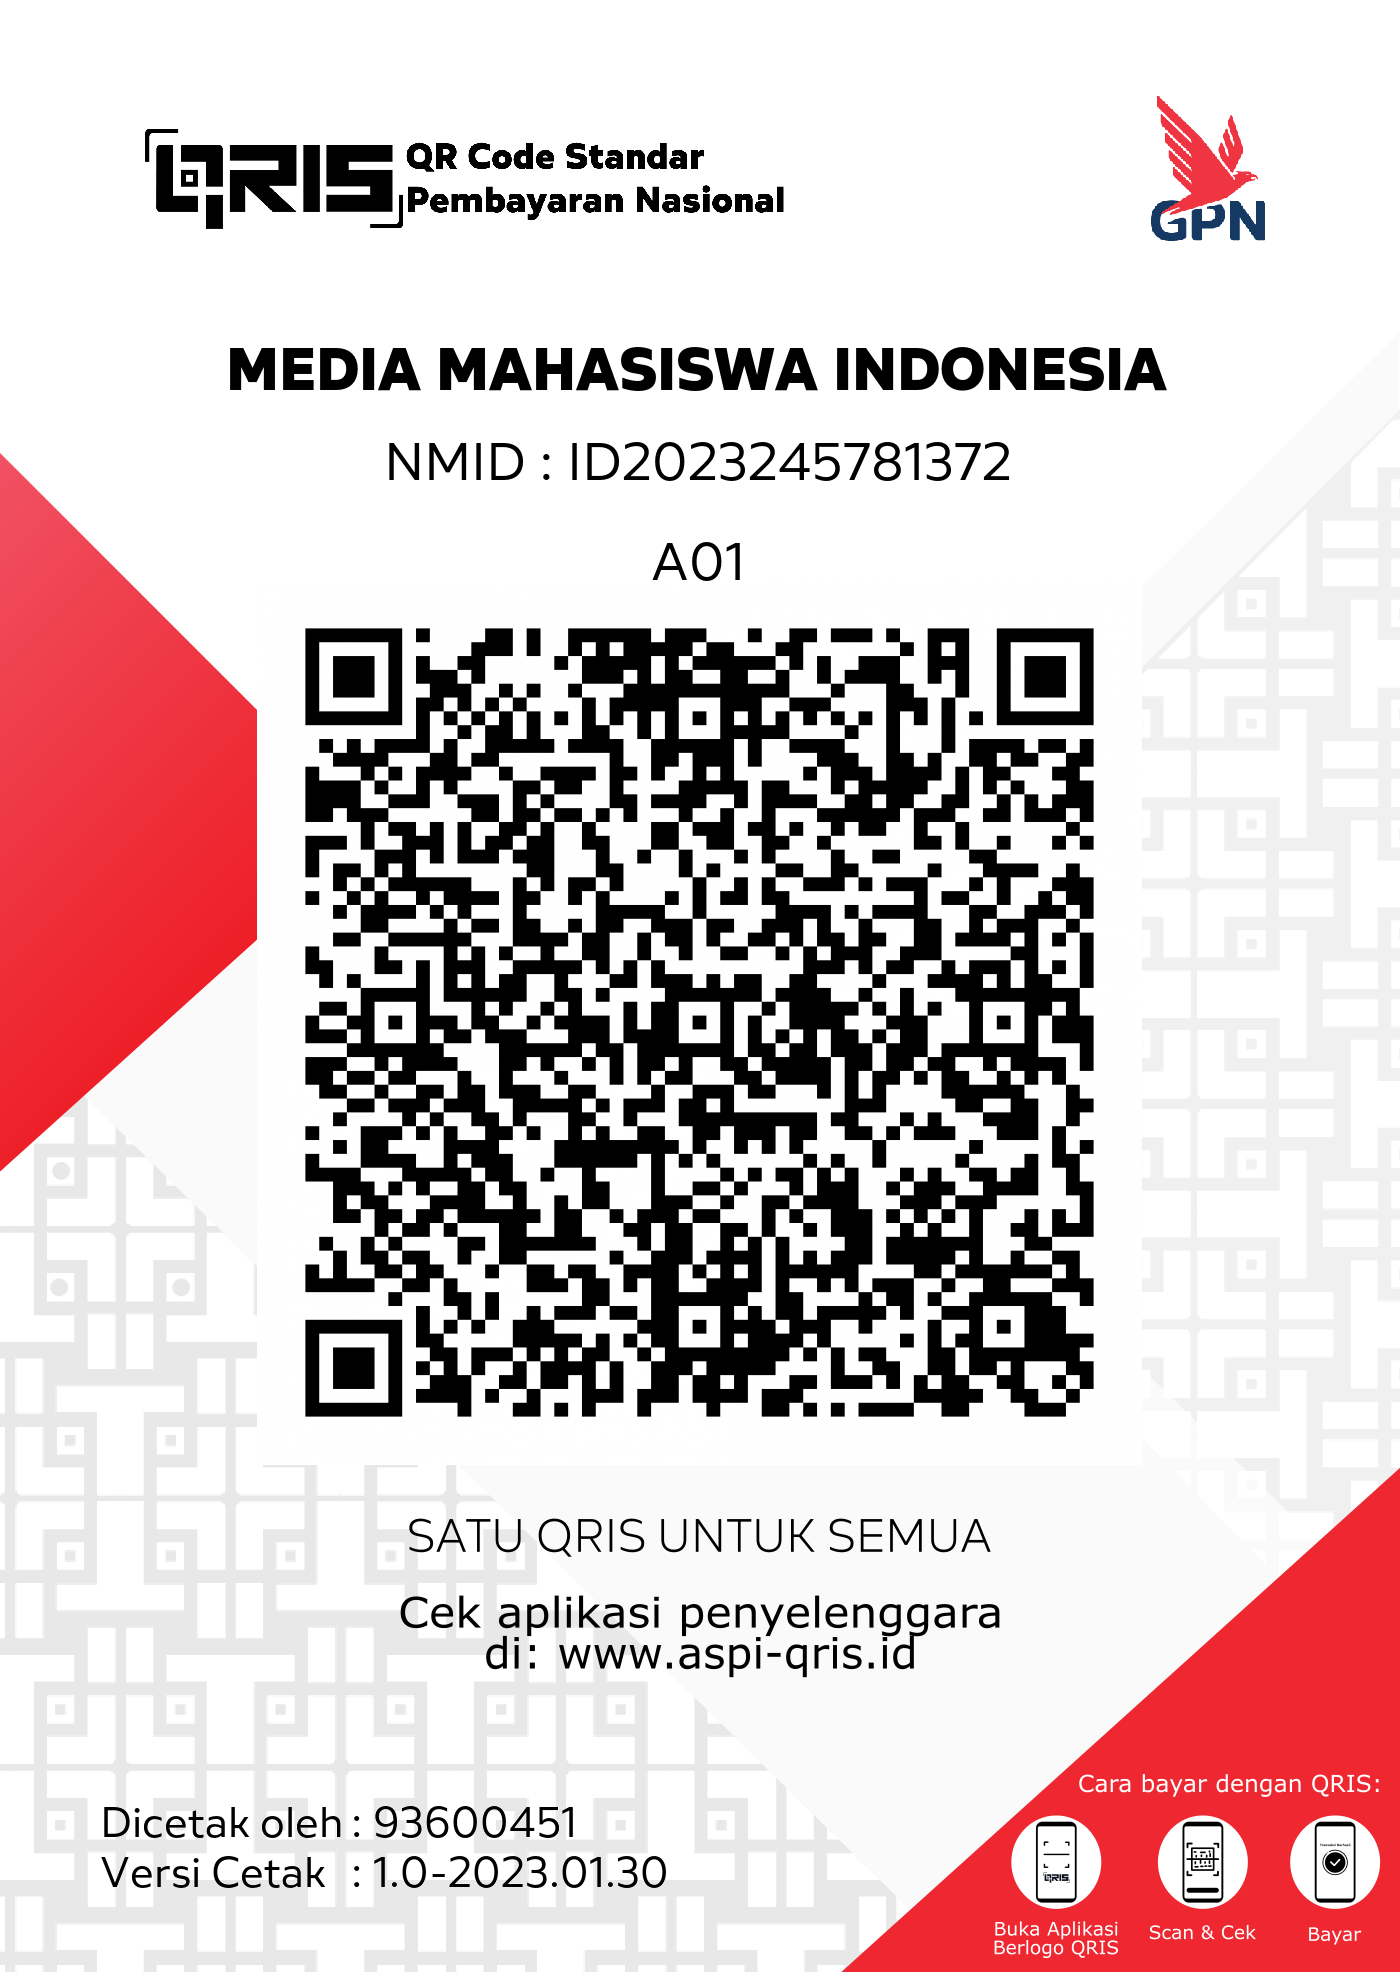 Donasi Media Mahasiswa Indonesia